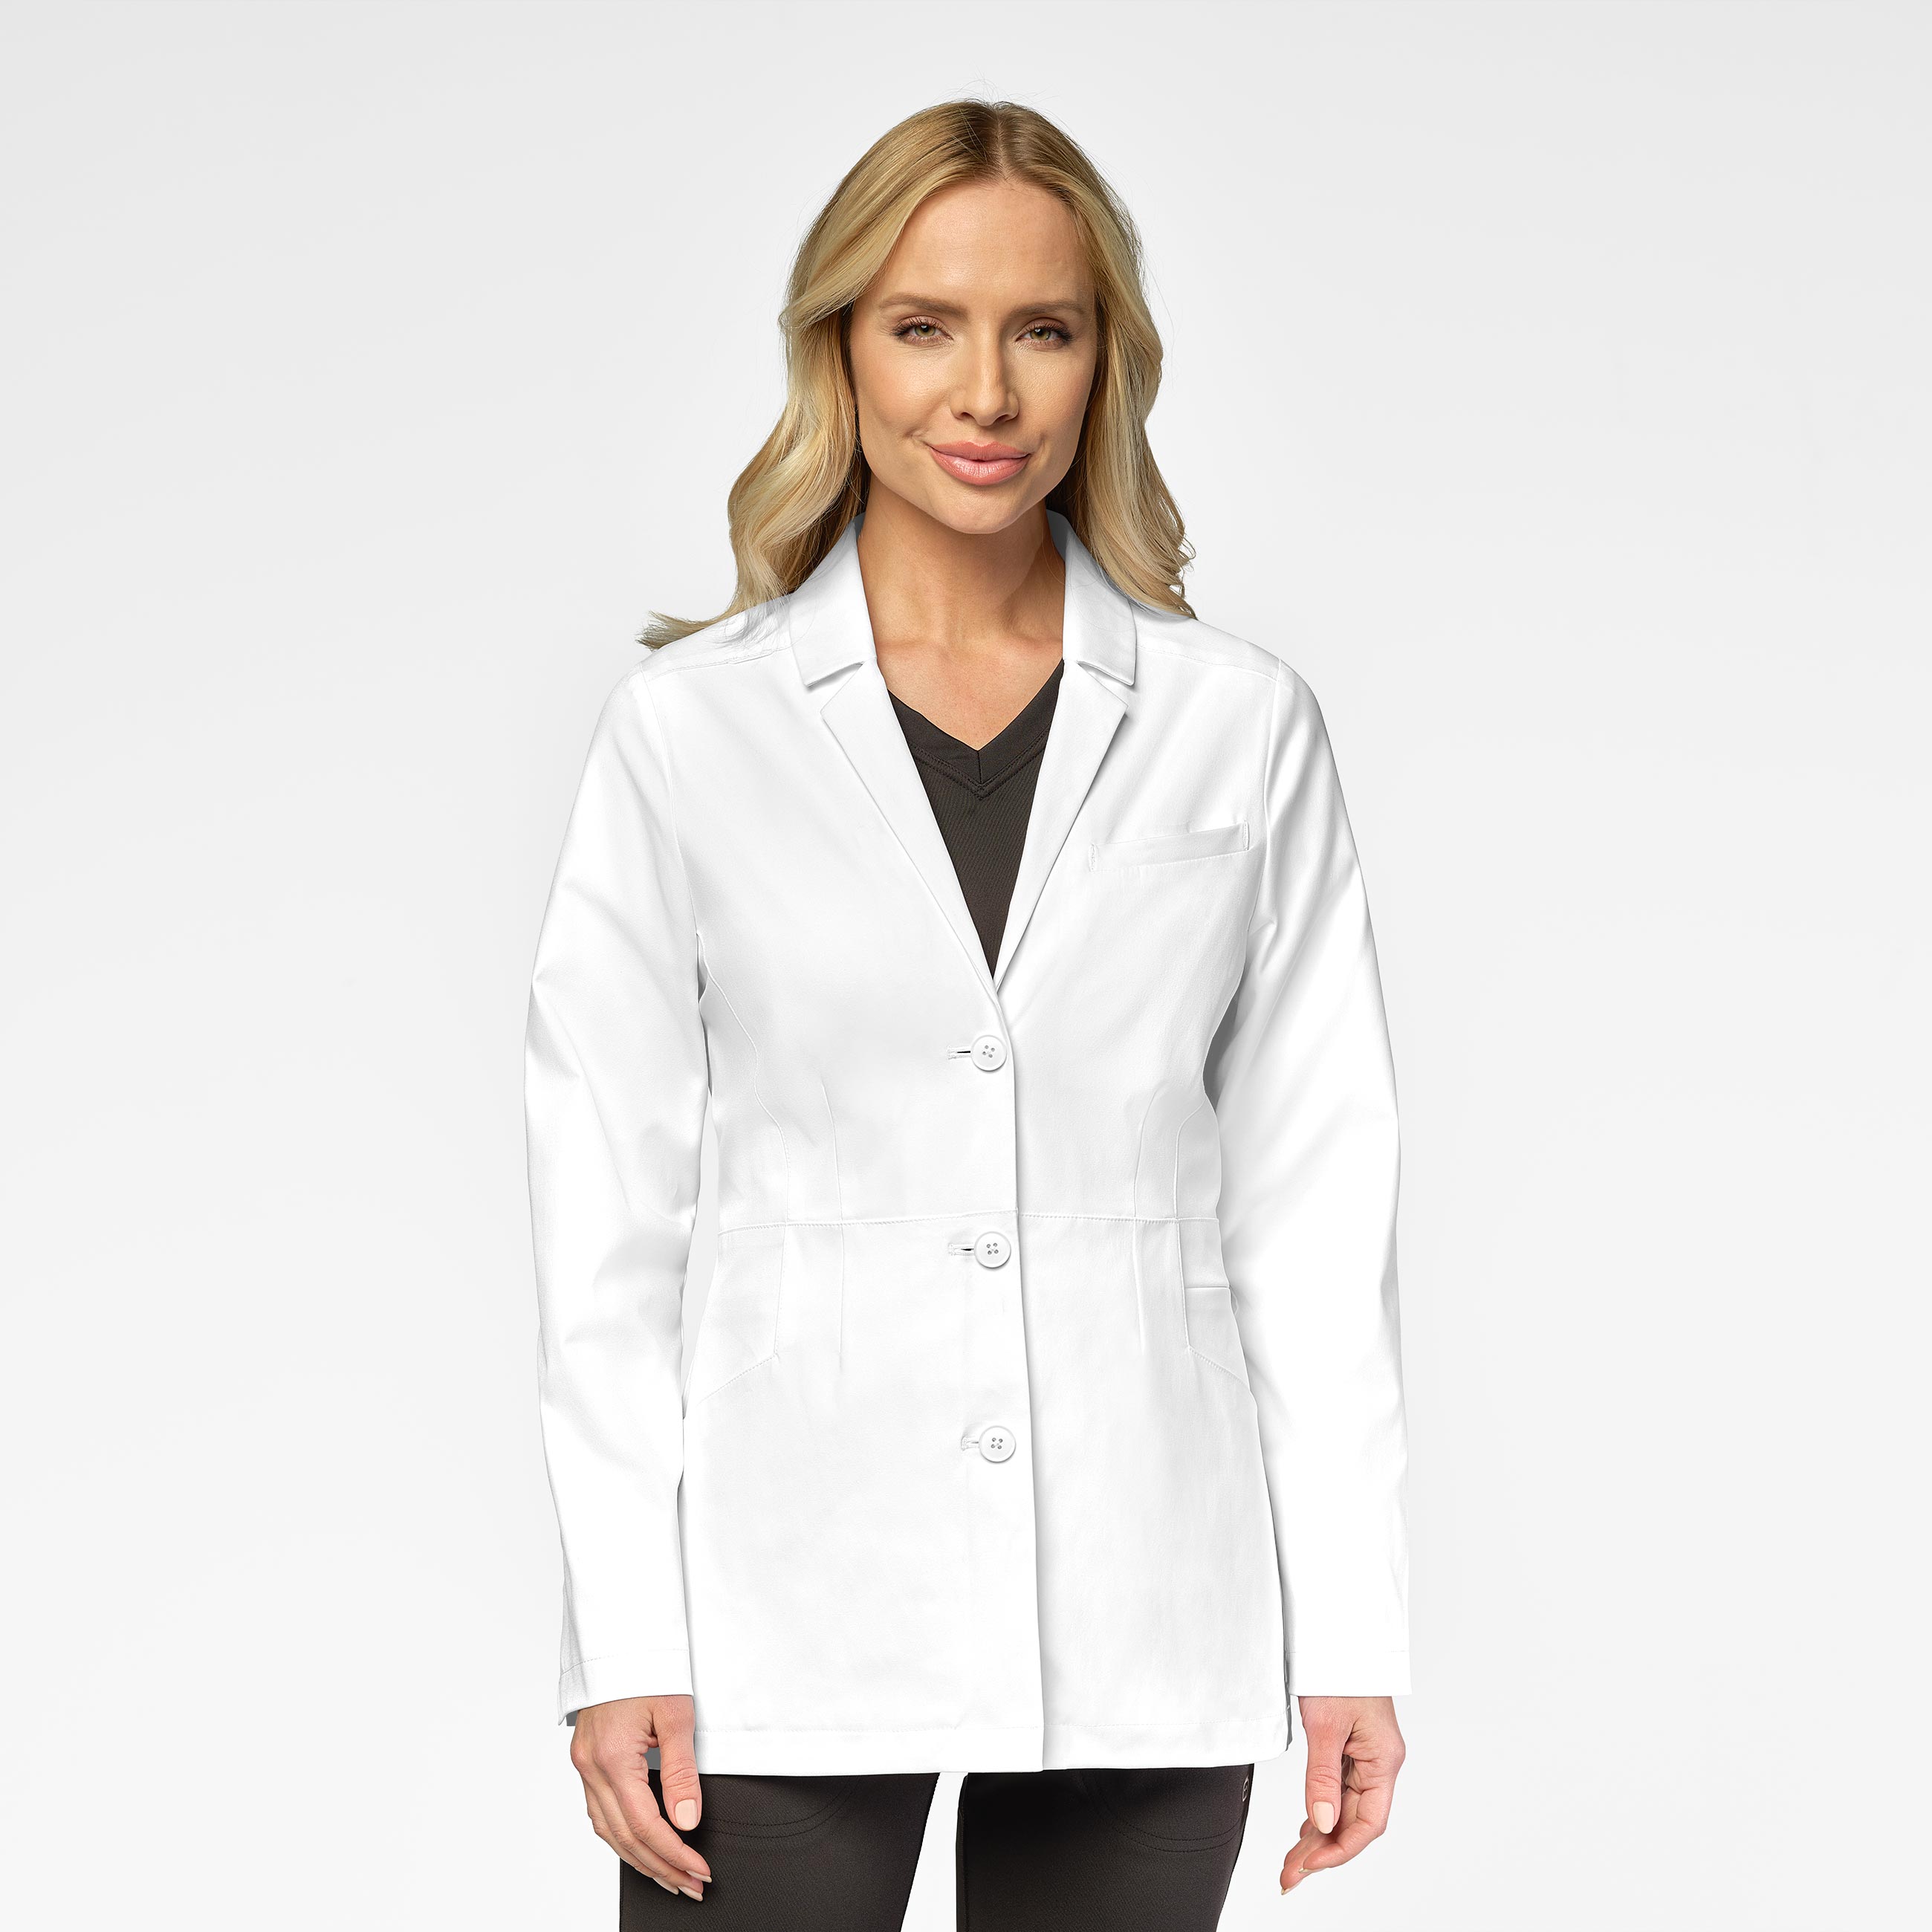 Wink Slate Women&#8216;s 28 Inch Doctors Coat-Wonder Wink